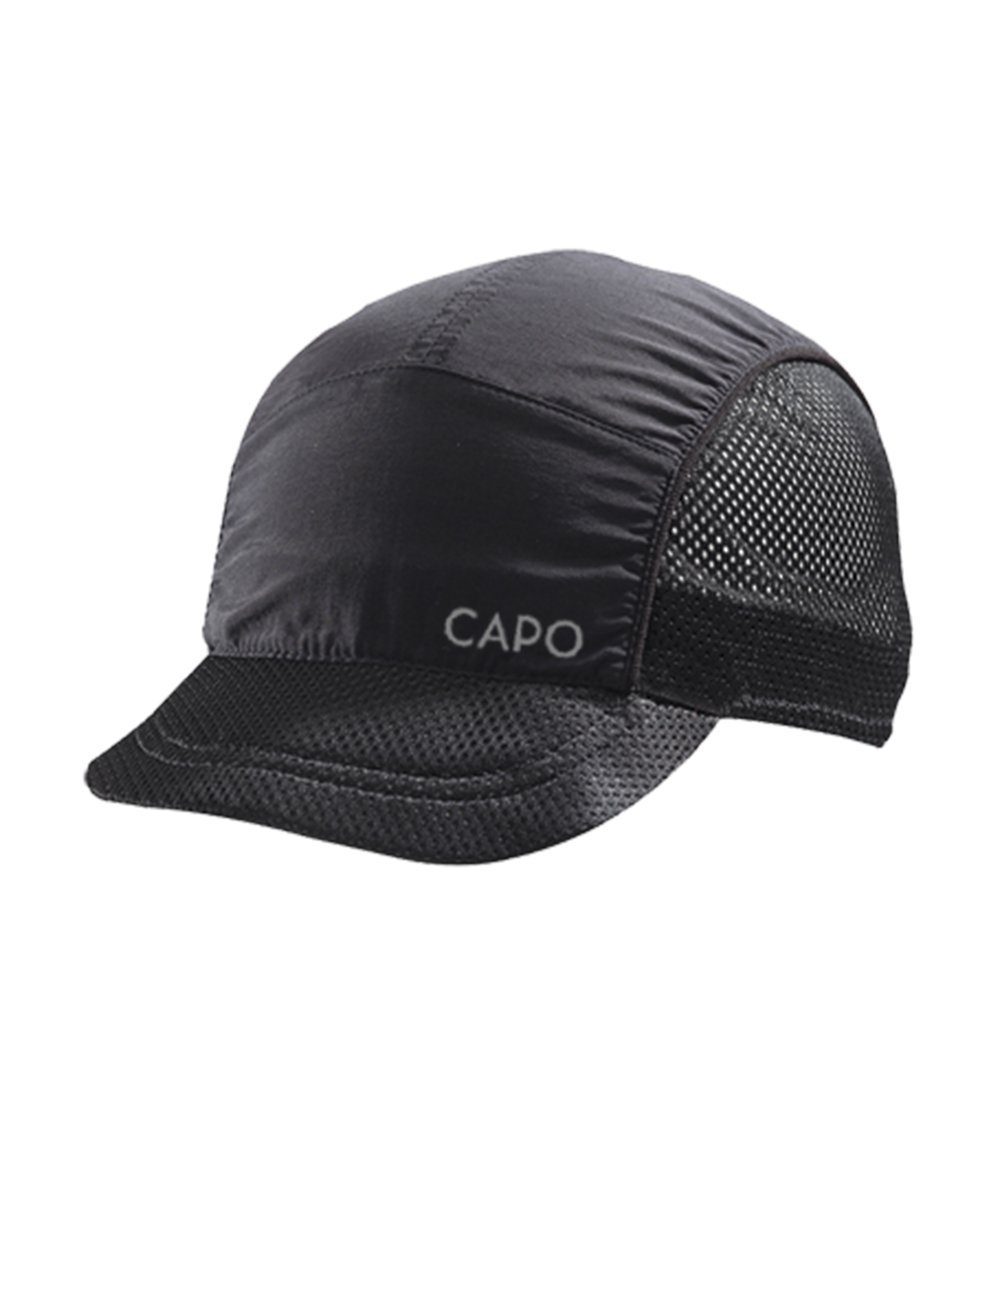 Netzeinsätze, CAPO Cap seitliche Europe Baseball Softcap, ultraleicht Refle Made black in